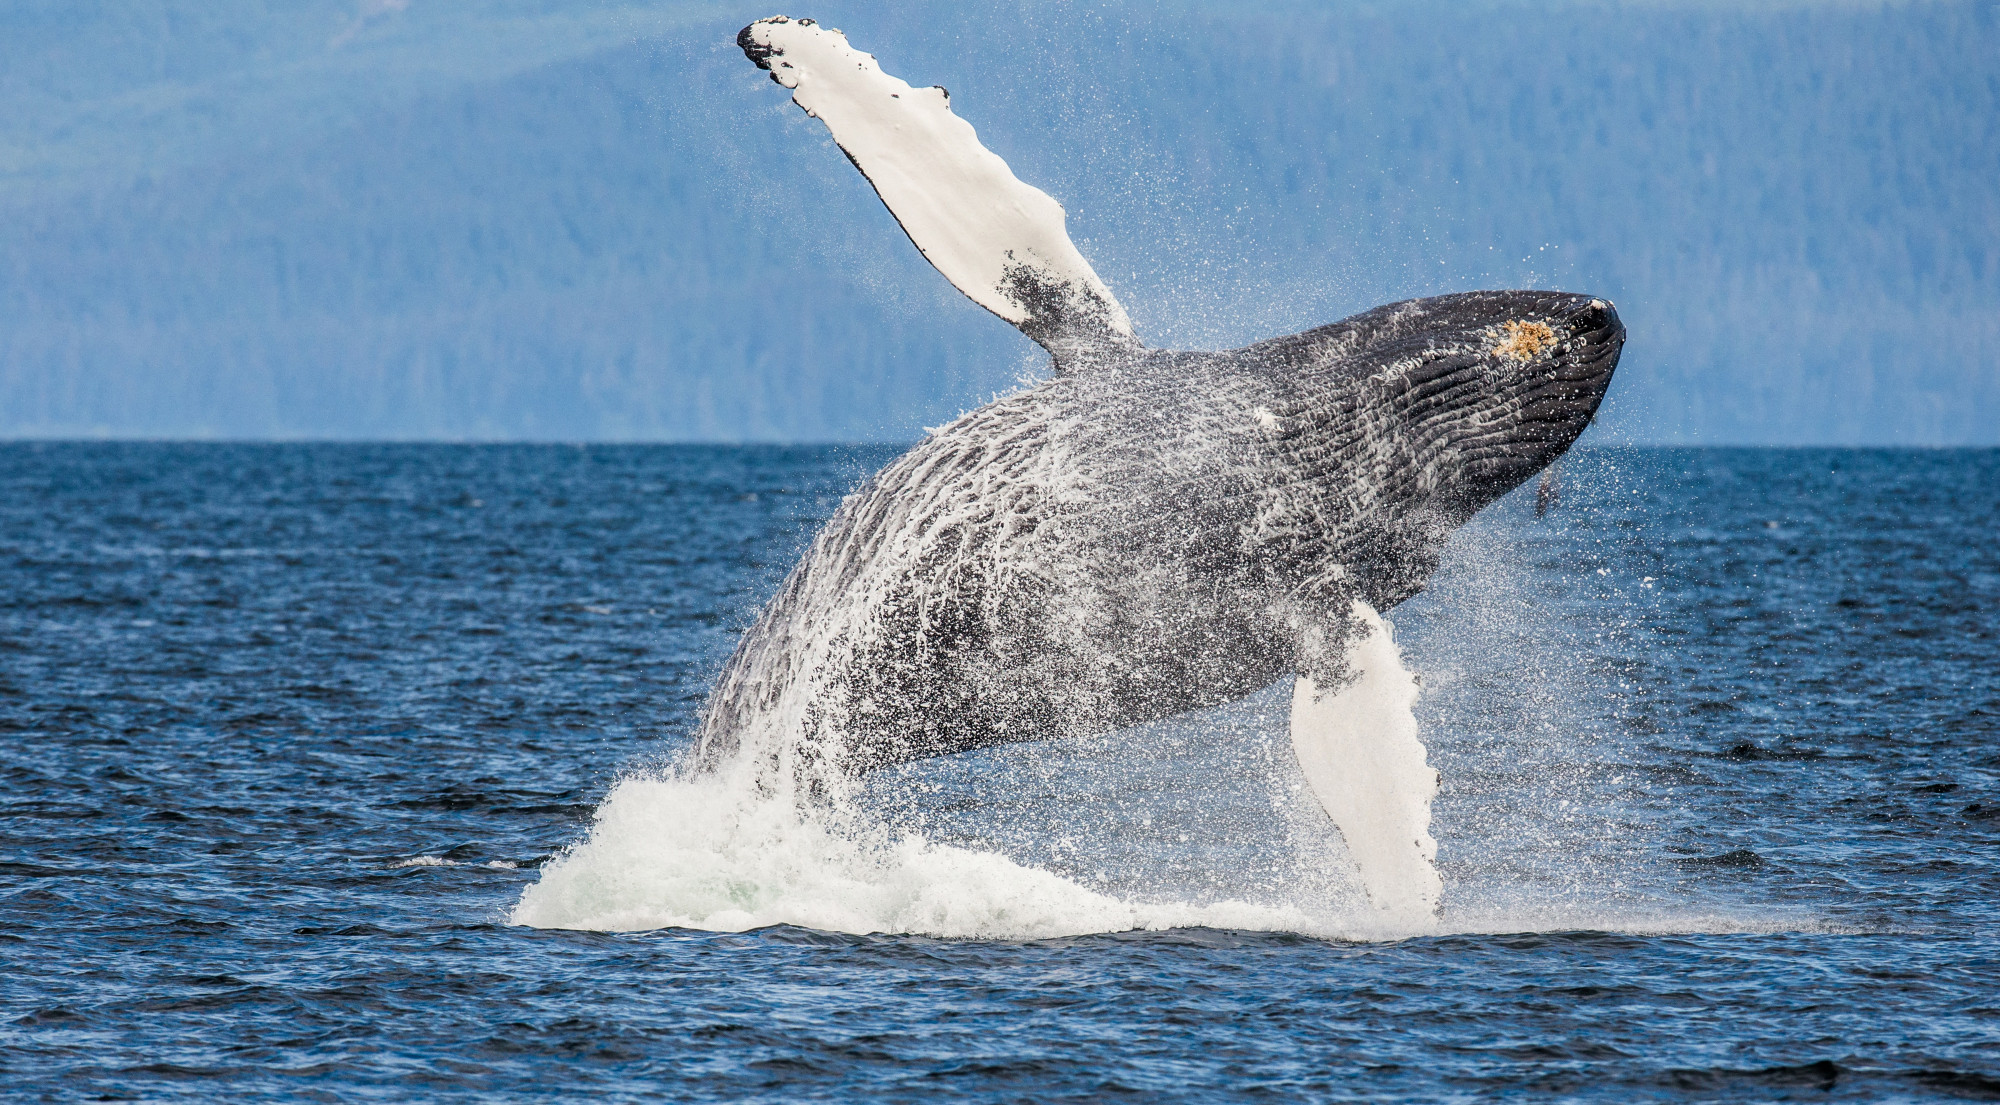 Kevesebbet énekelnek a bálnák, amióta egyszerűbben találnak társat